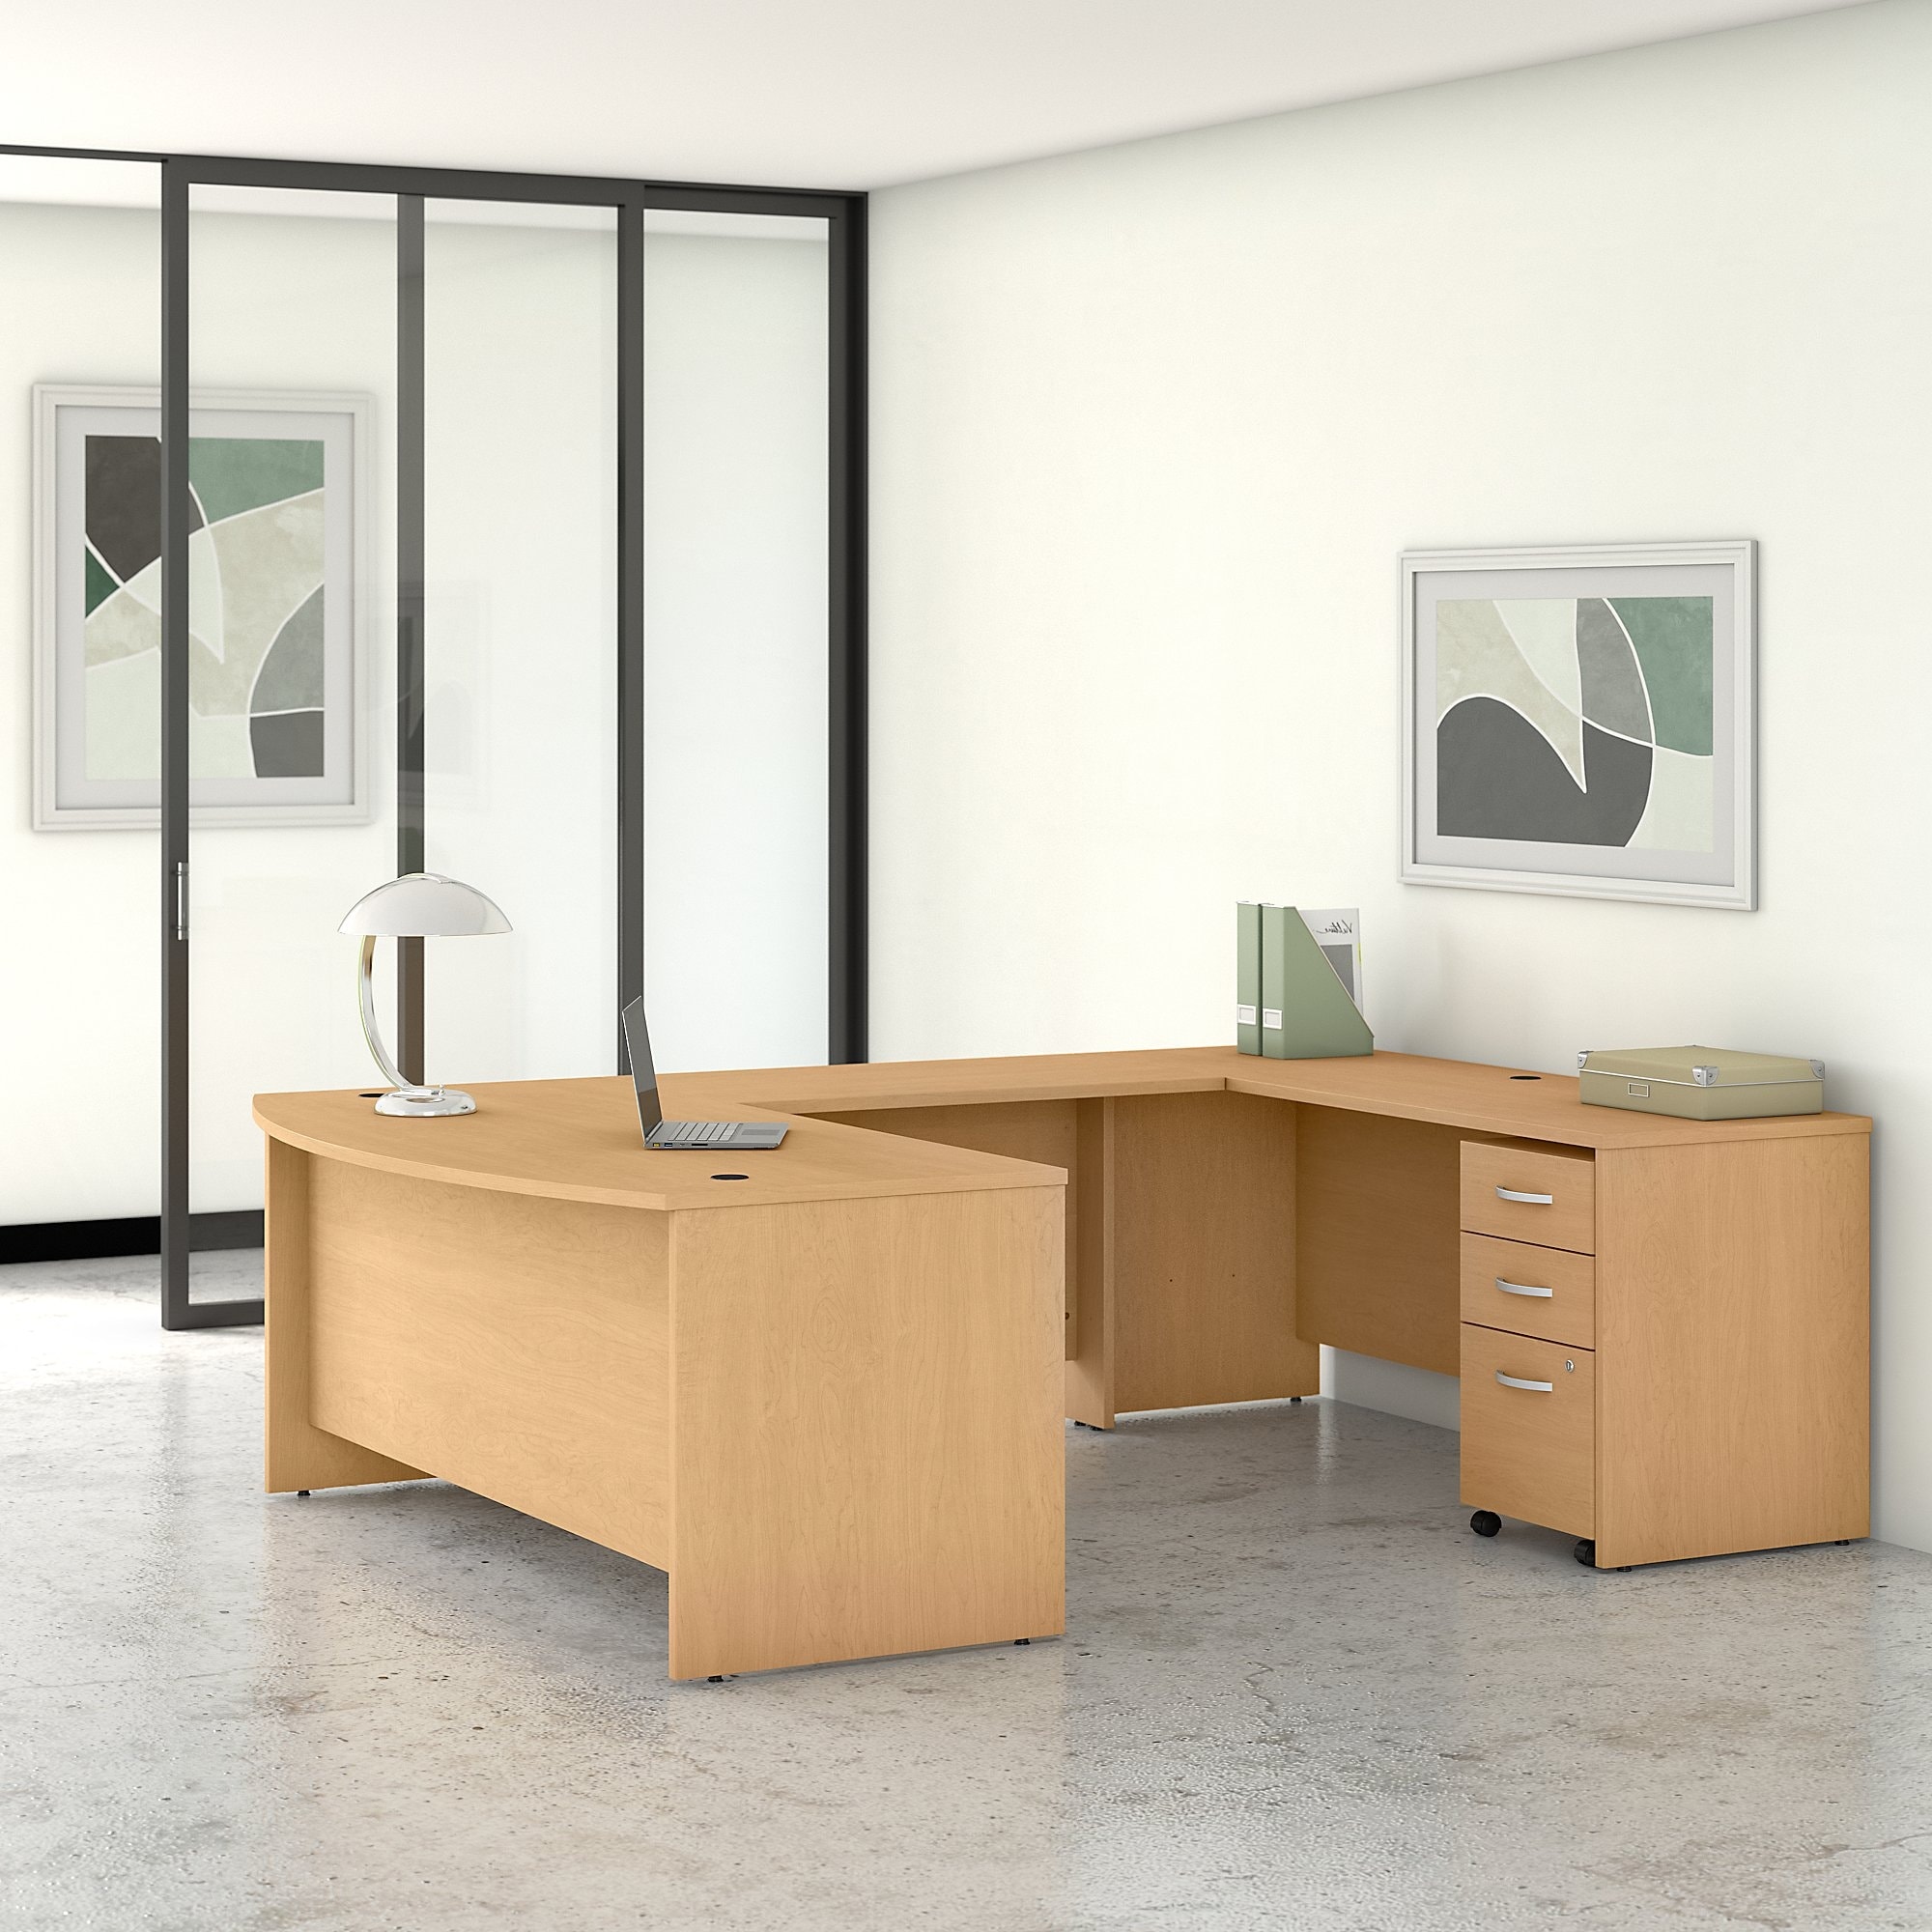 Buy U-Shape Desks & Computer Tables Online At Bed Bath & Beyond | Our Best  Home Office Furniture Deals